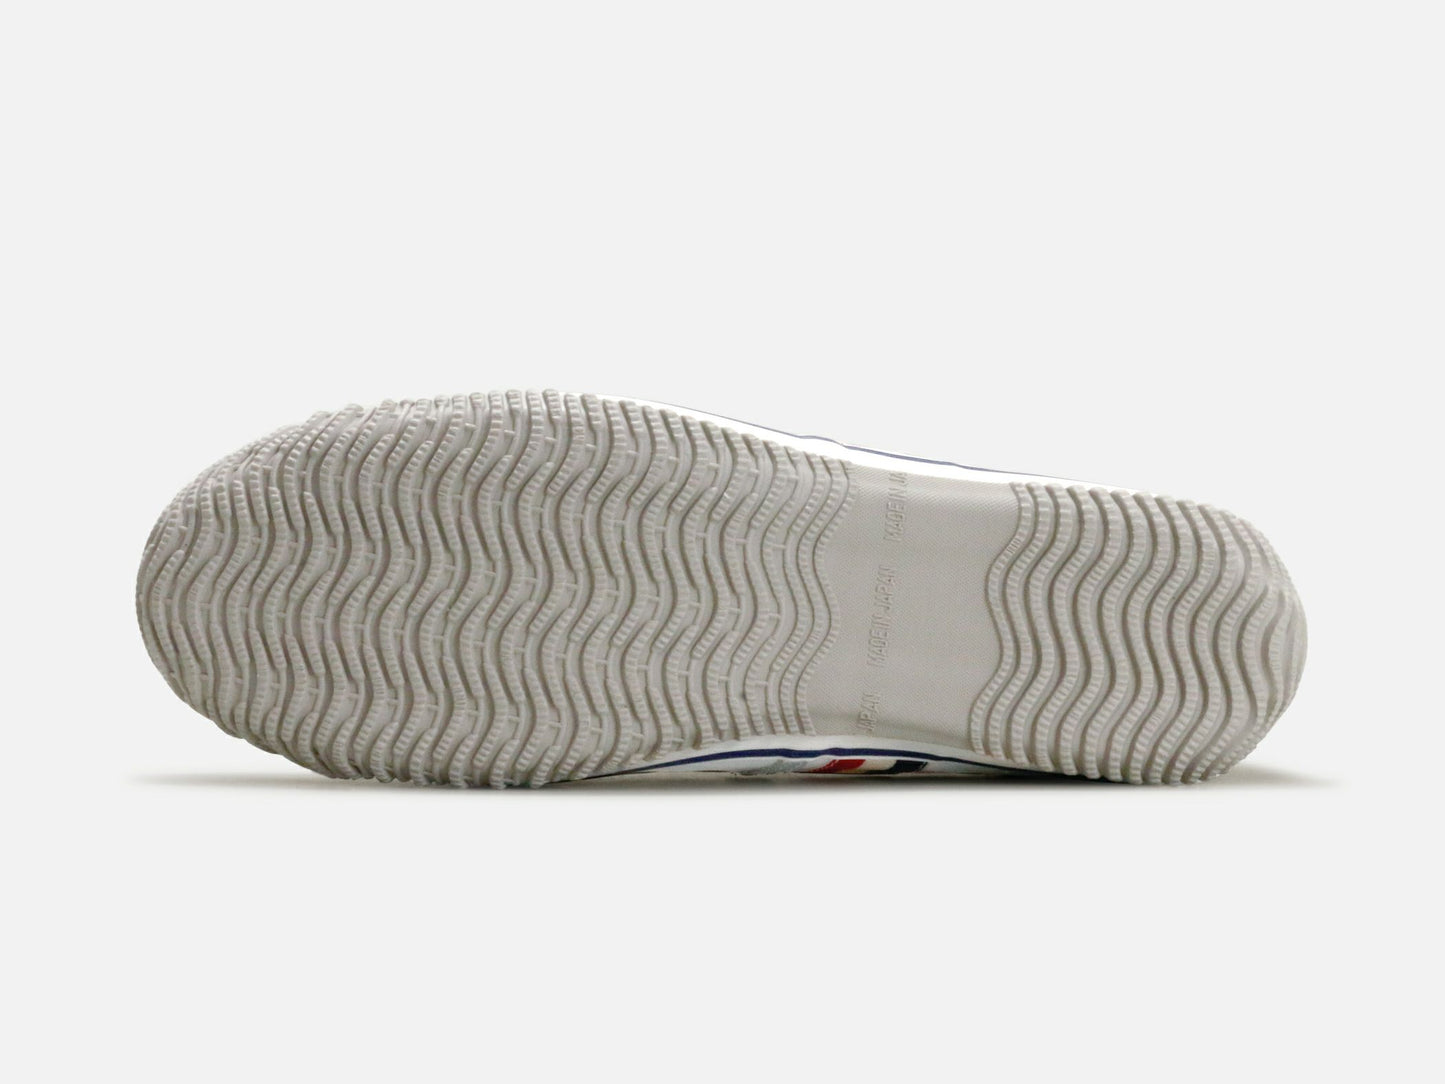 SPINGLE MOVEのスニーカー「SPM-168 Tricolor」の靴底の商品画像